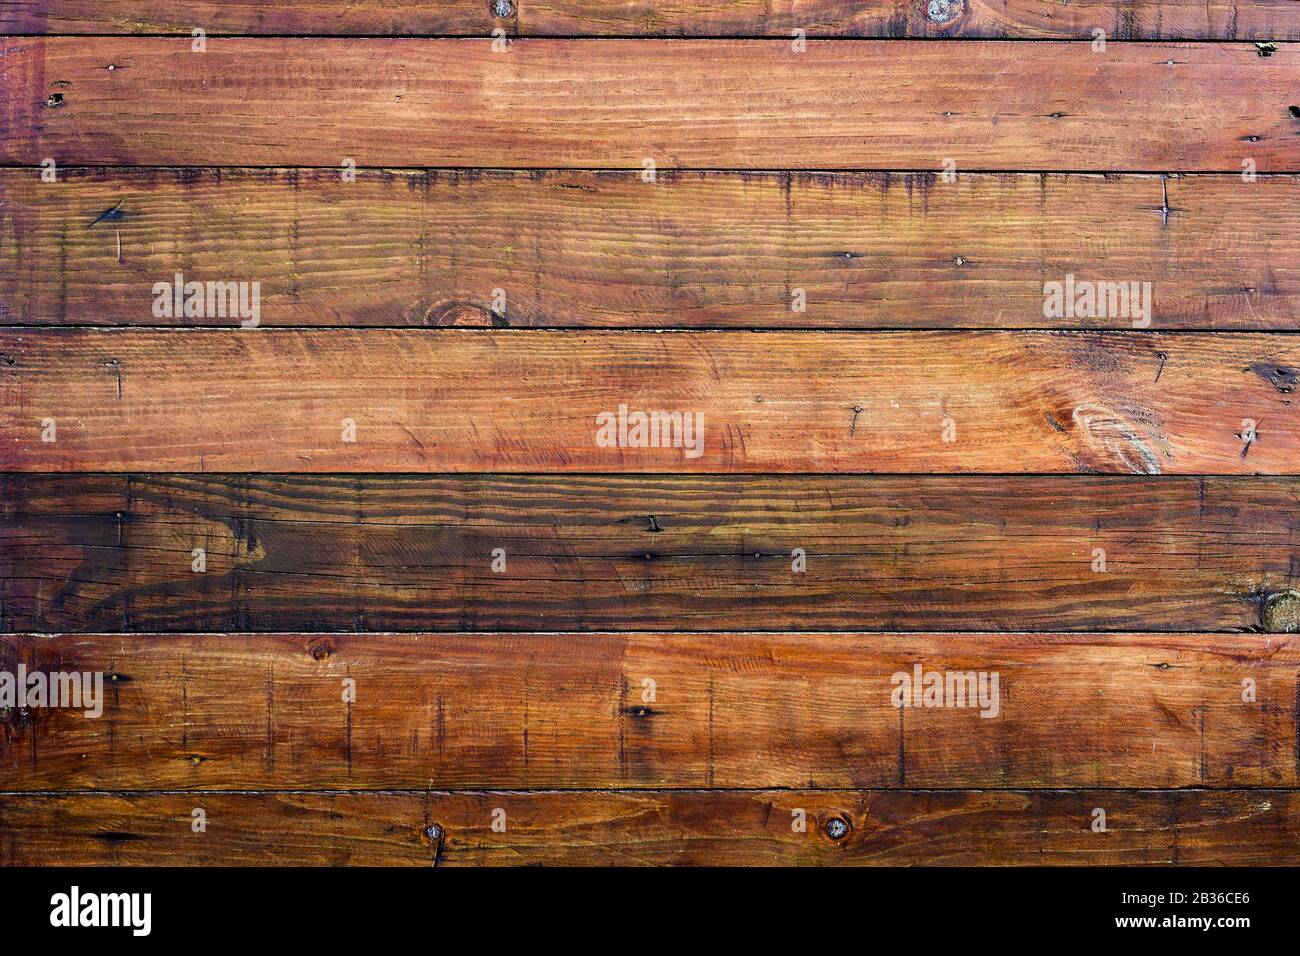 Eine dunkle Holzstruktur. Braune Holzstruktur. Alte Hintergrundfelder. Holztisch im Retro-Look. Rustikaler Hintergrund. Vintage-farbige Oberfläche. Horizontal Stockfoto